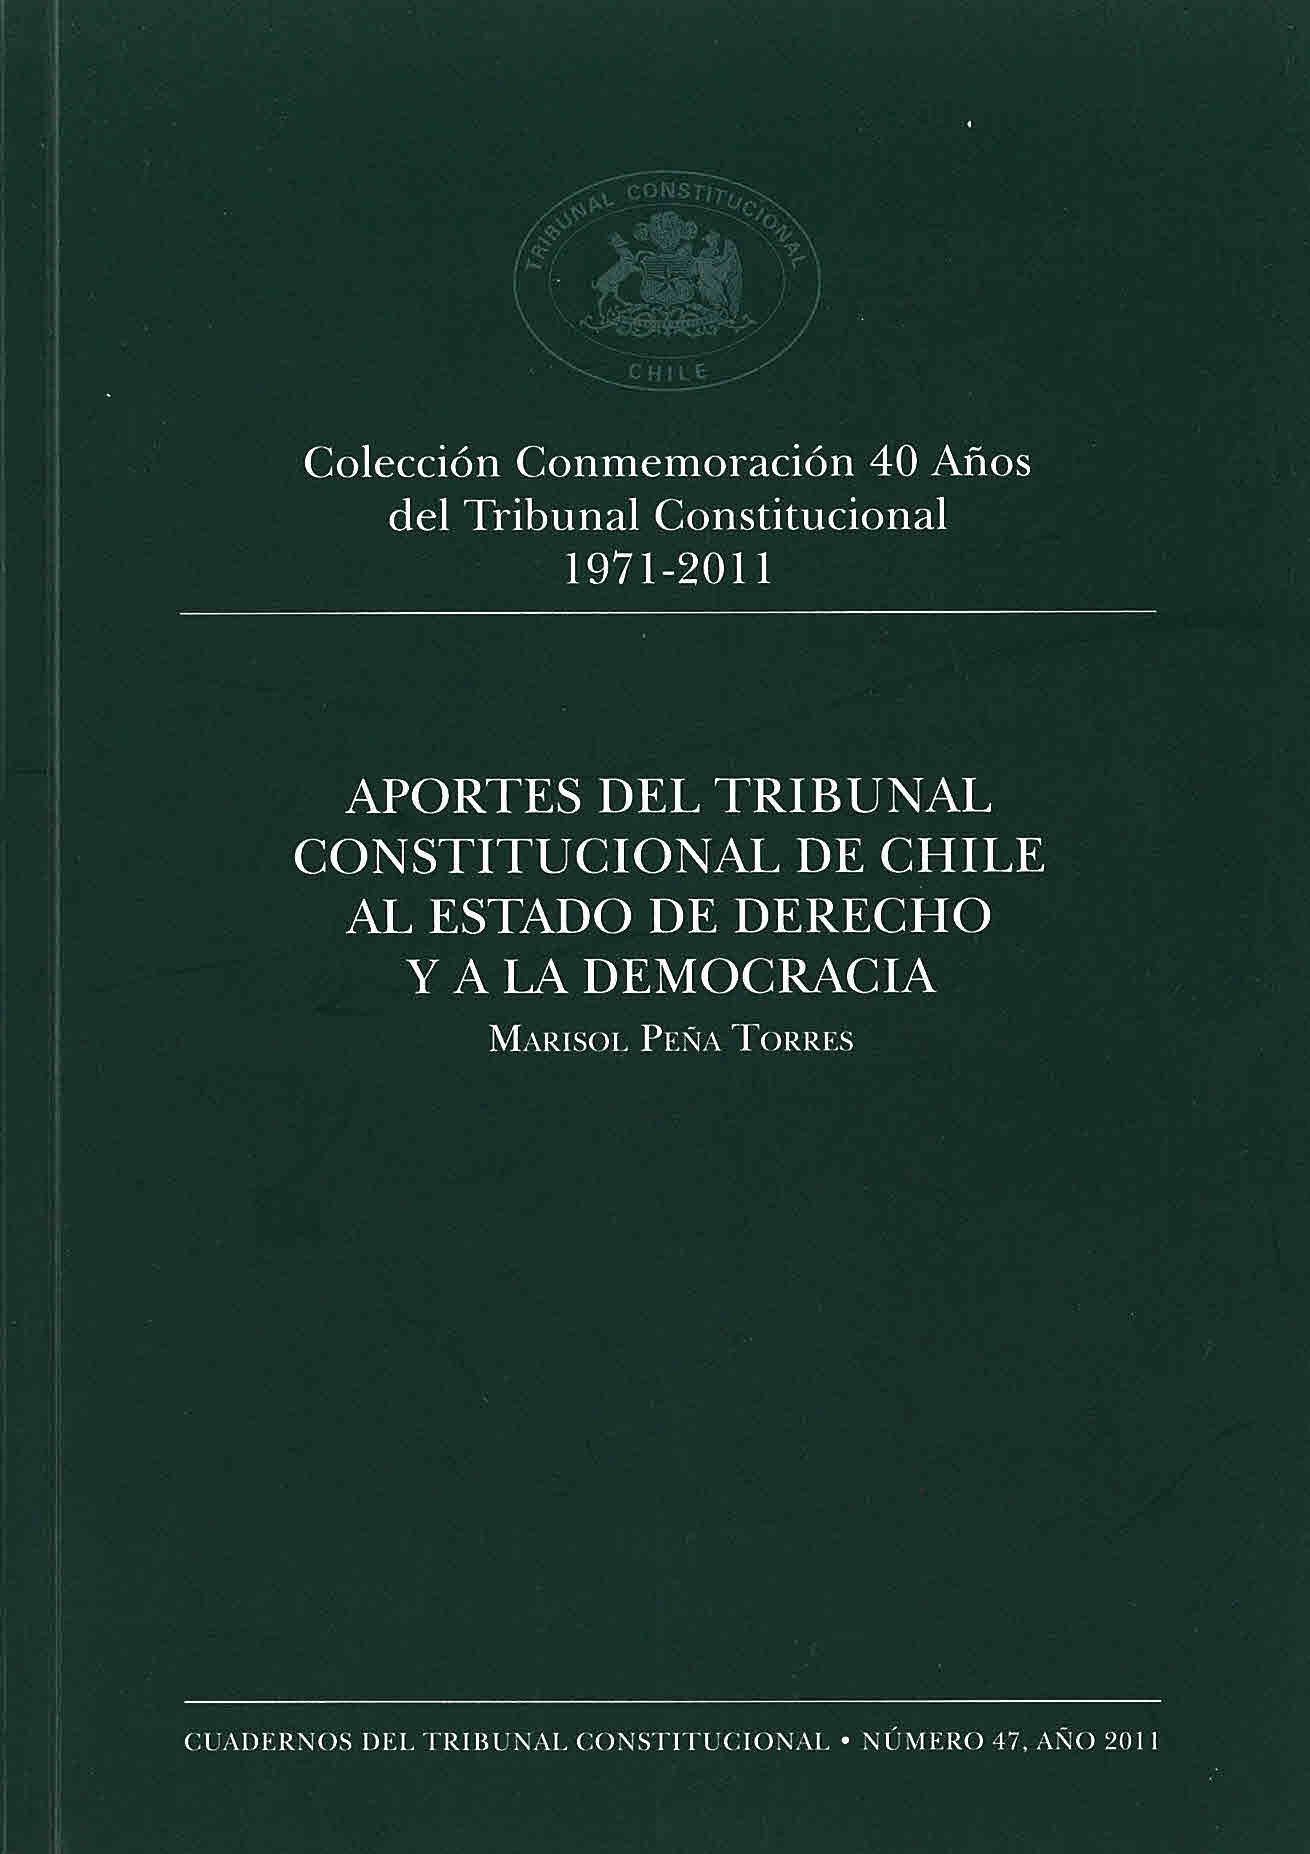 Colección Conmemoración 40 años del Tribunal Constitucional 1971-2011. Aportes del tribunal Constitucional de Chile al Estado de Derecho y a la Democracia